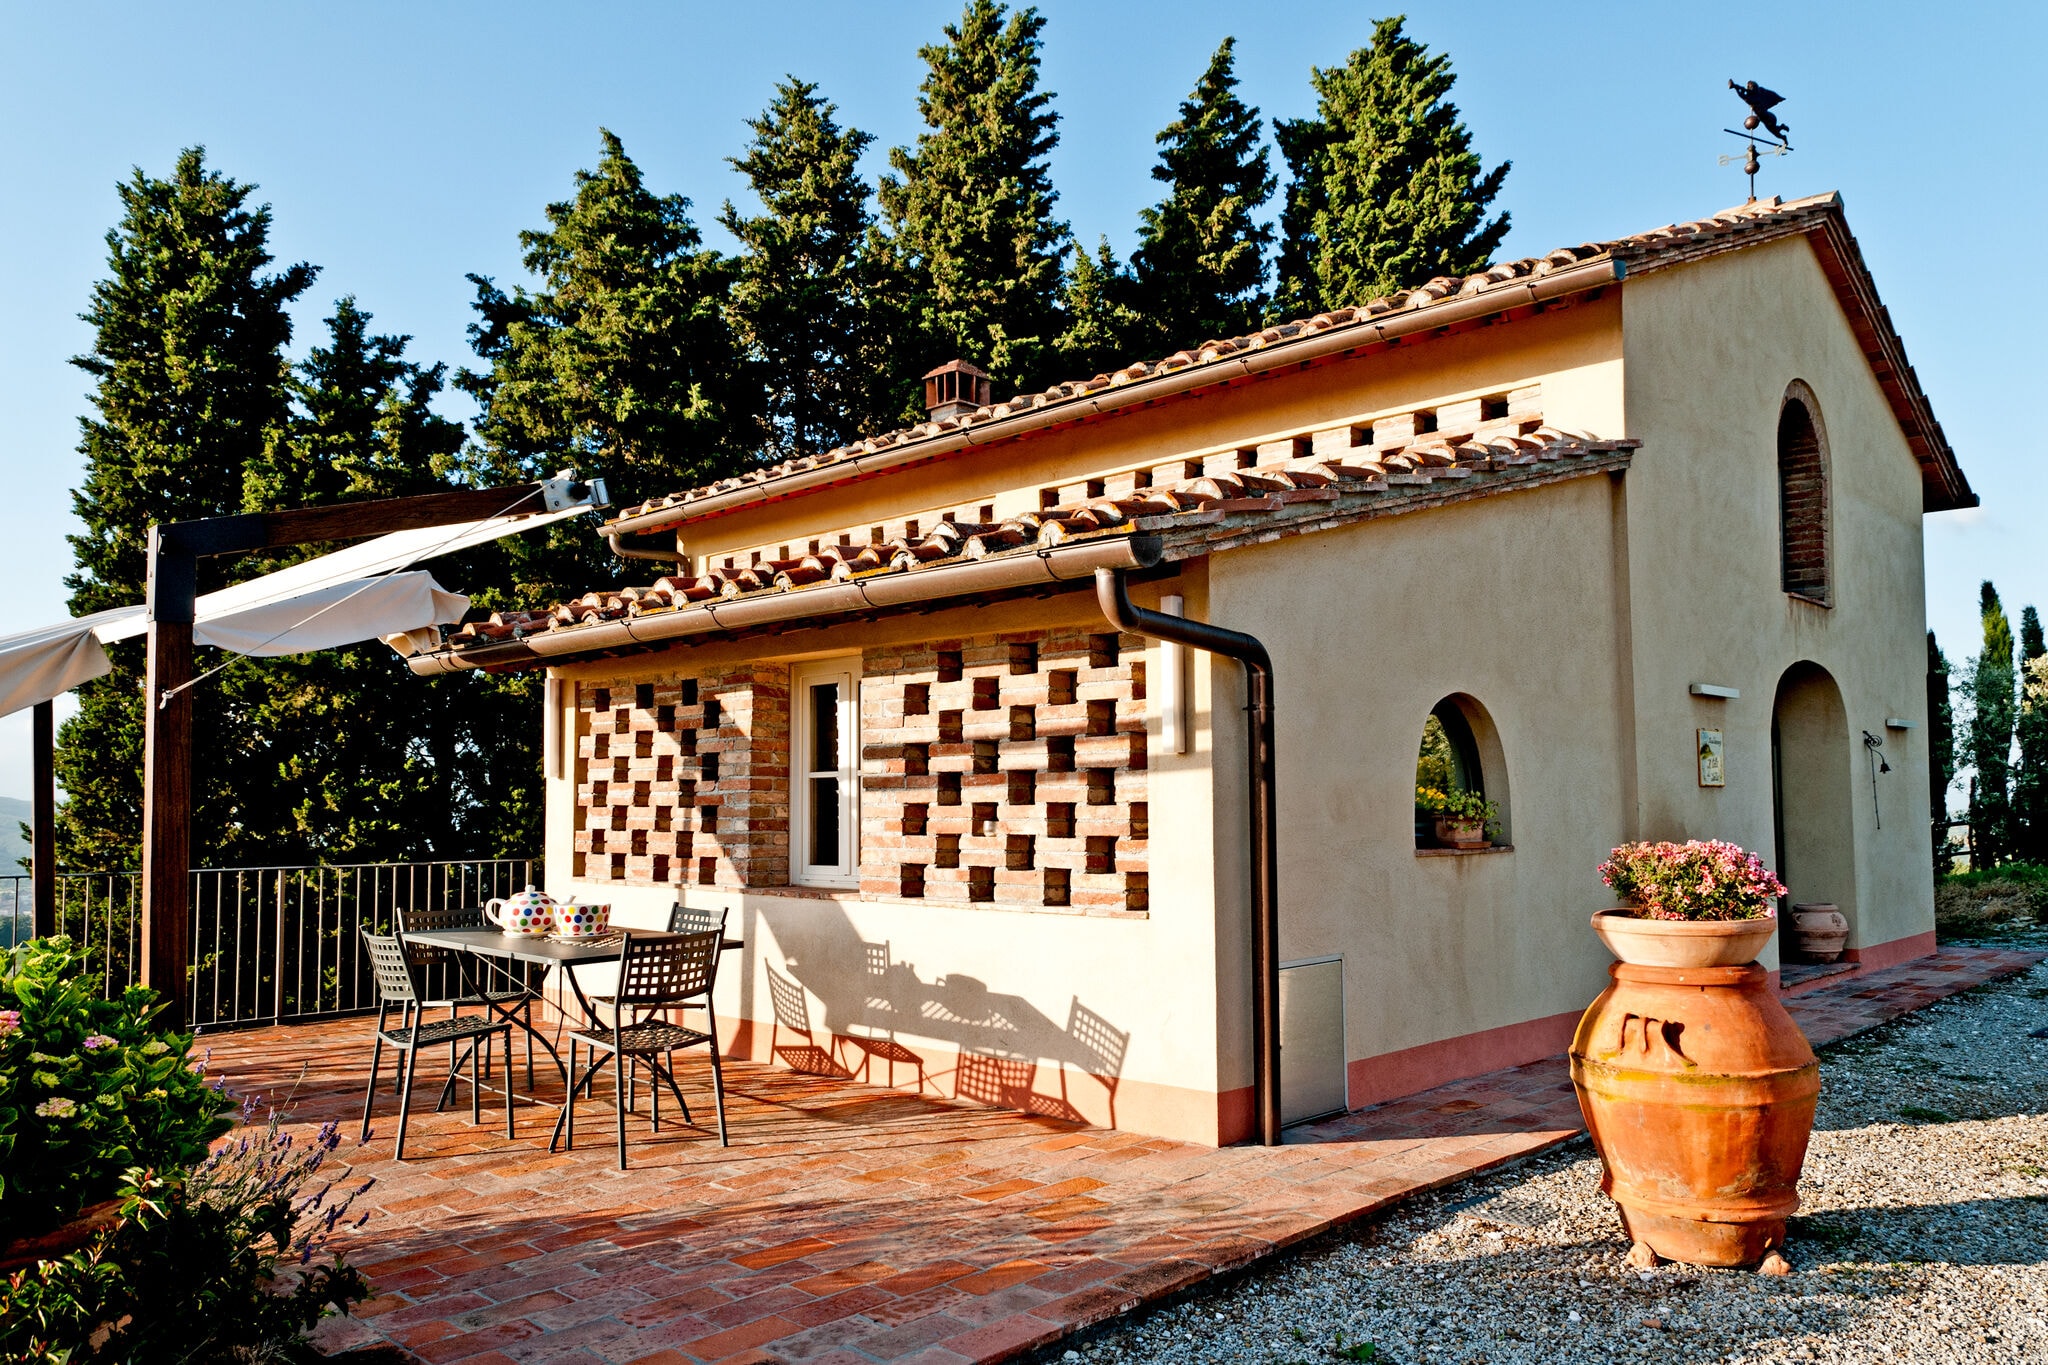 Aangenaam vakantiehuis in Montelupo Fiorentino met tuin